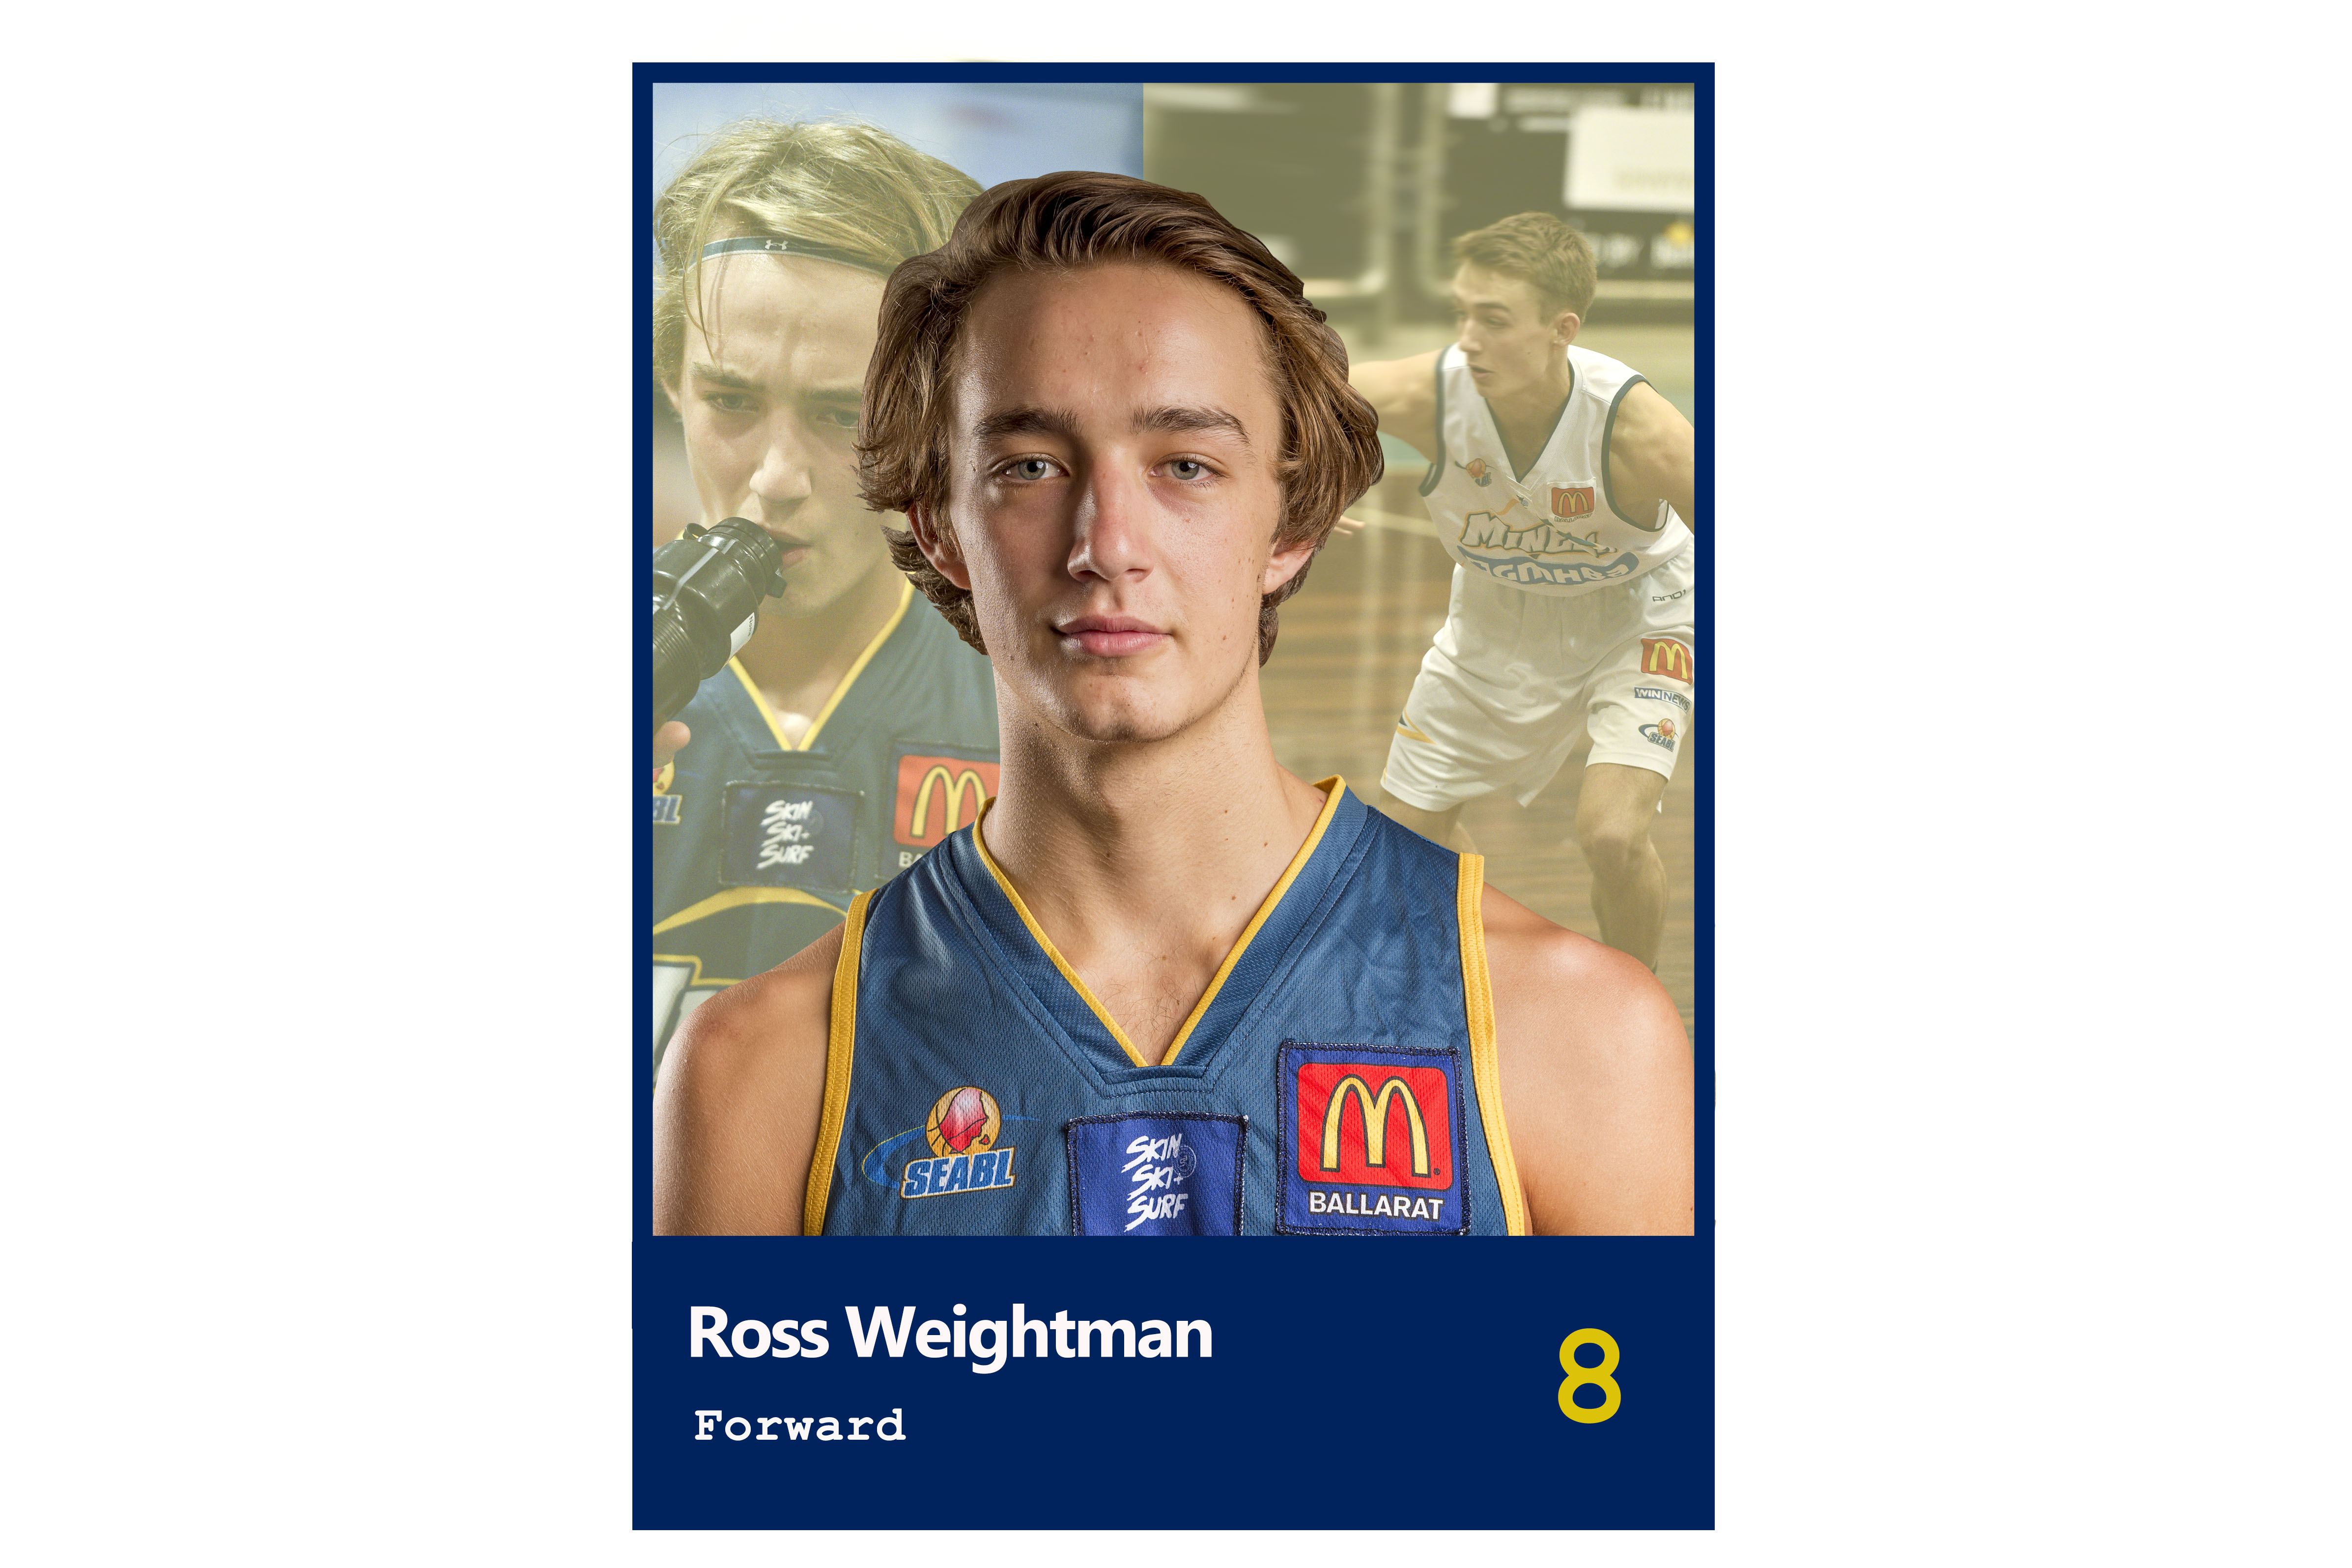 Ross Weightman